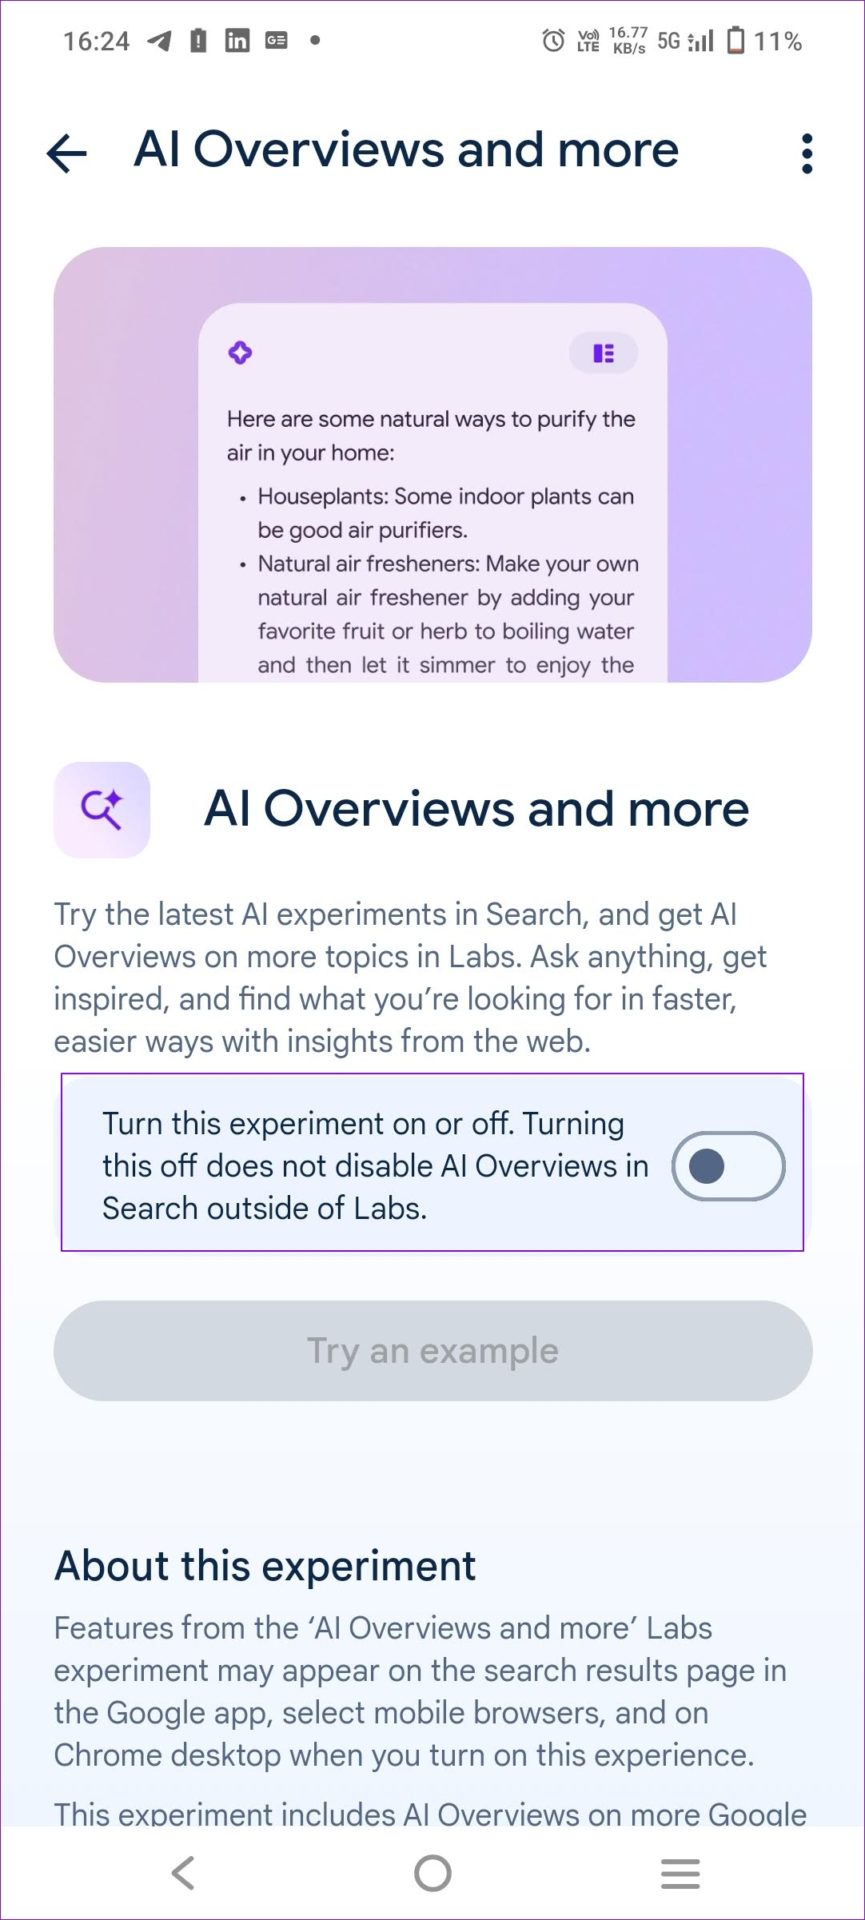 Toggle off AI Overviews